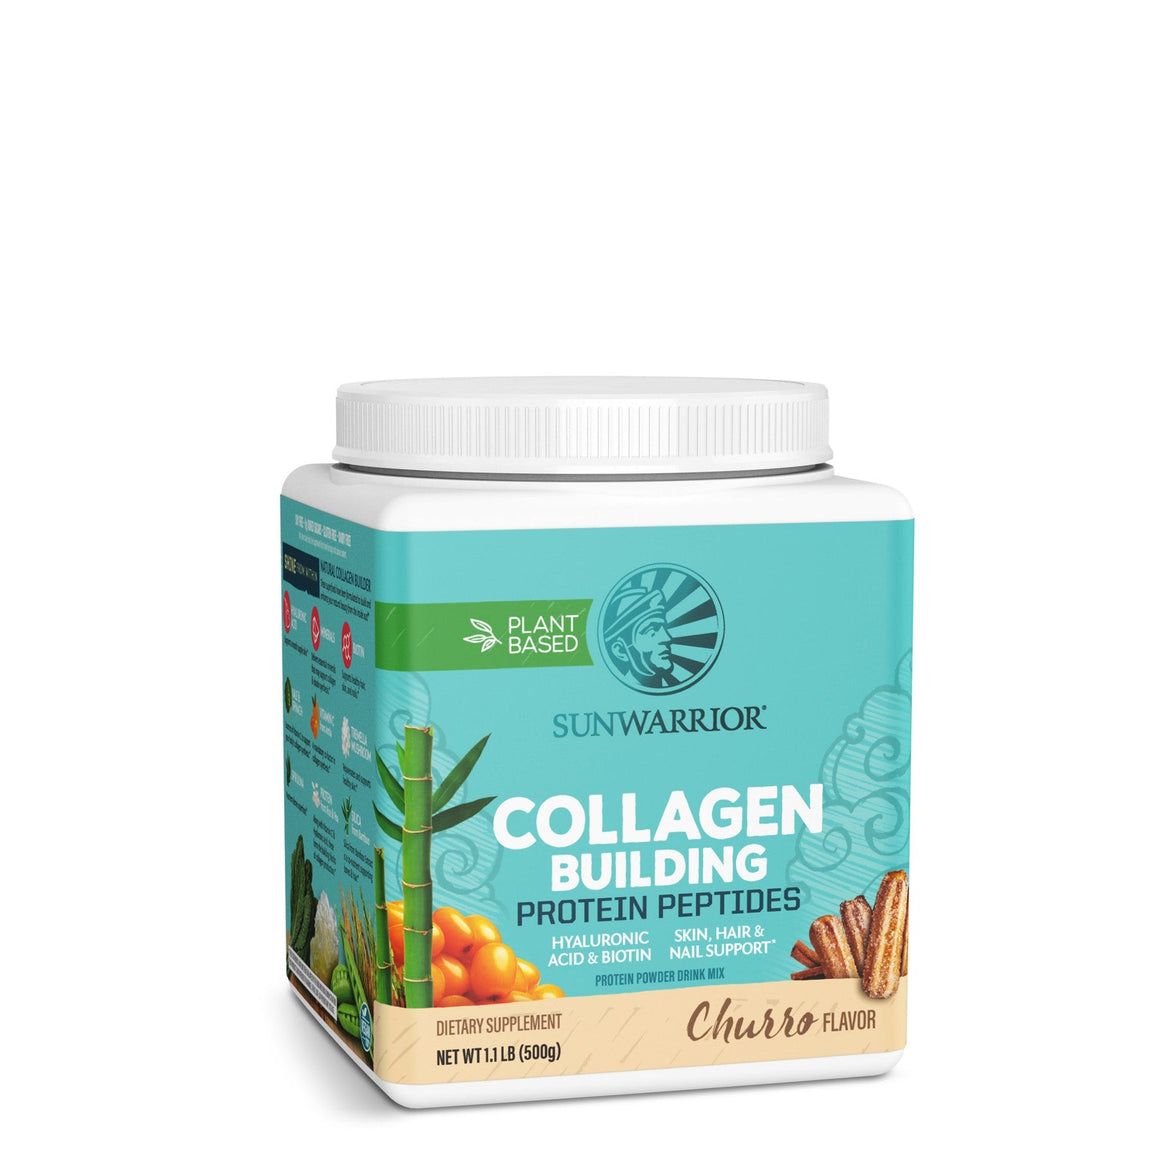 Collagen Building Protein Peptides - Churro Flavor - Sunwarrior